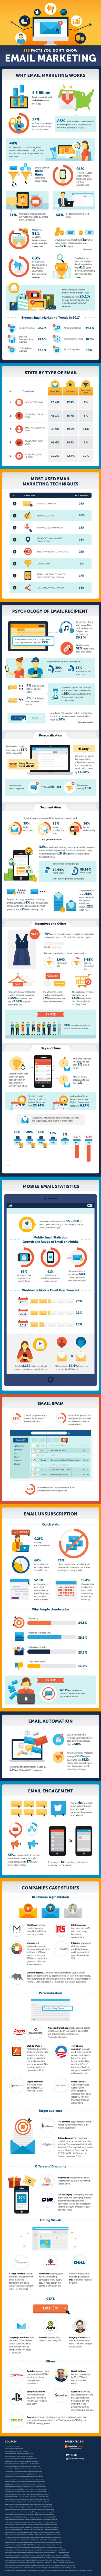 Infografik, E-Mail-Marketing, 119 Fakten, Online Marketing